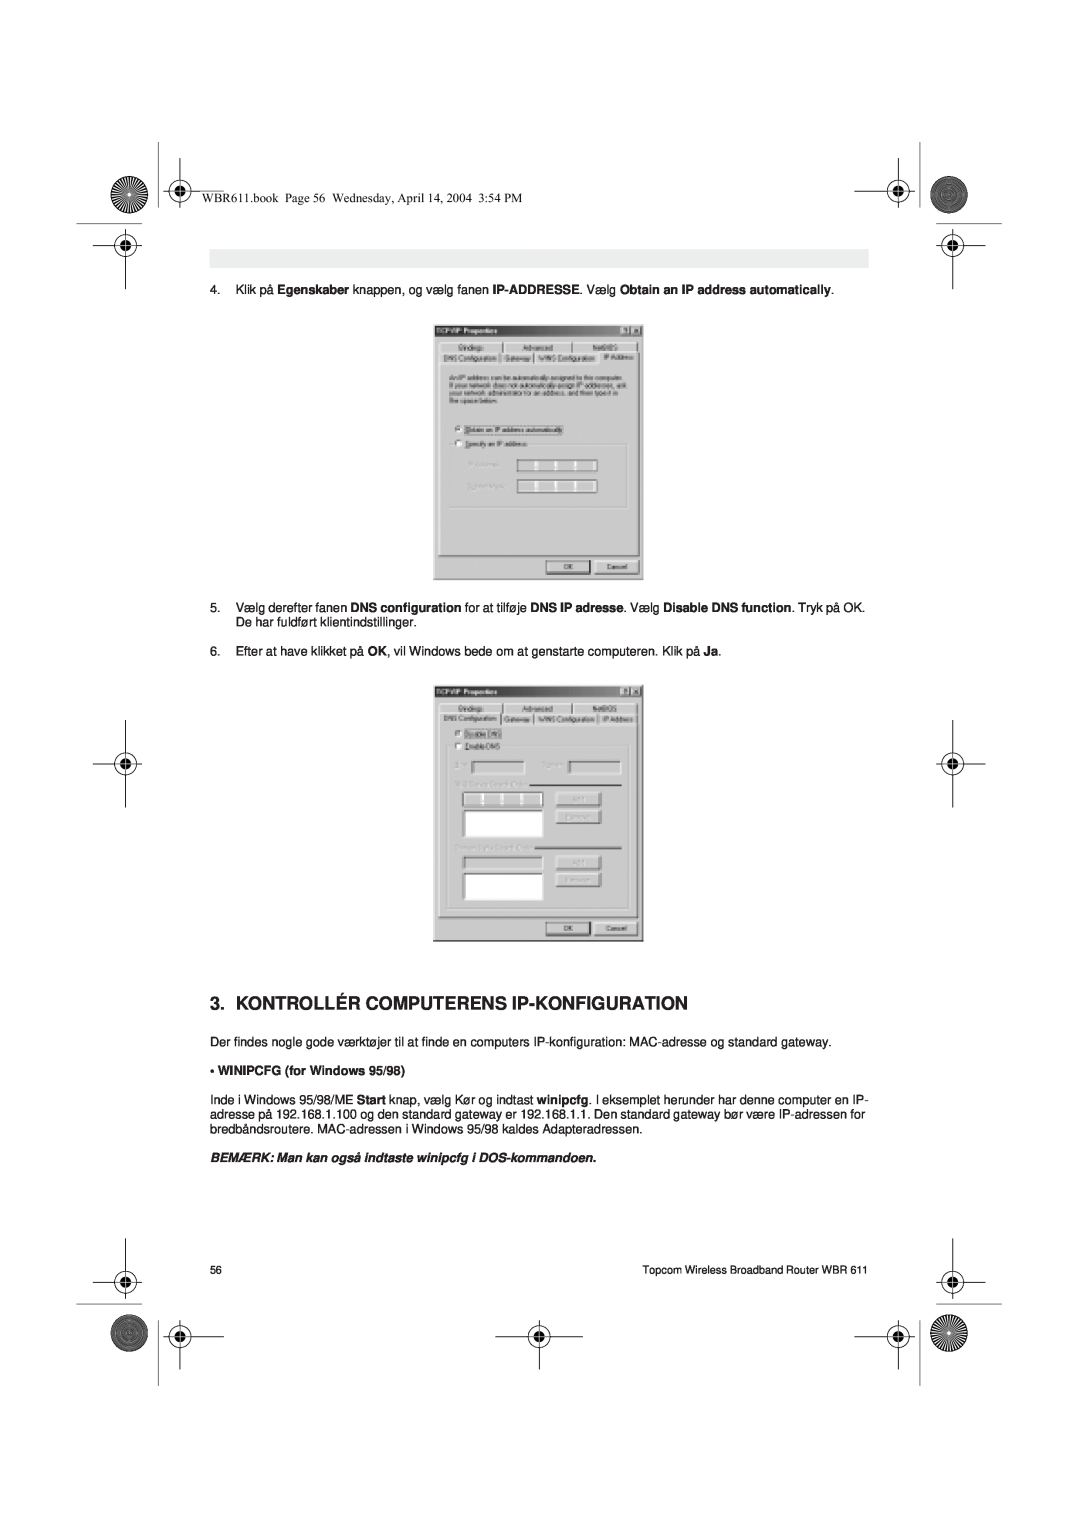 Topcom WBR 611 manual do utilizador Kontrollér Computerens Ip-Konfiguration, WINIPCFG for Windows 95/98 